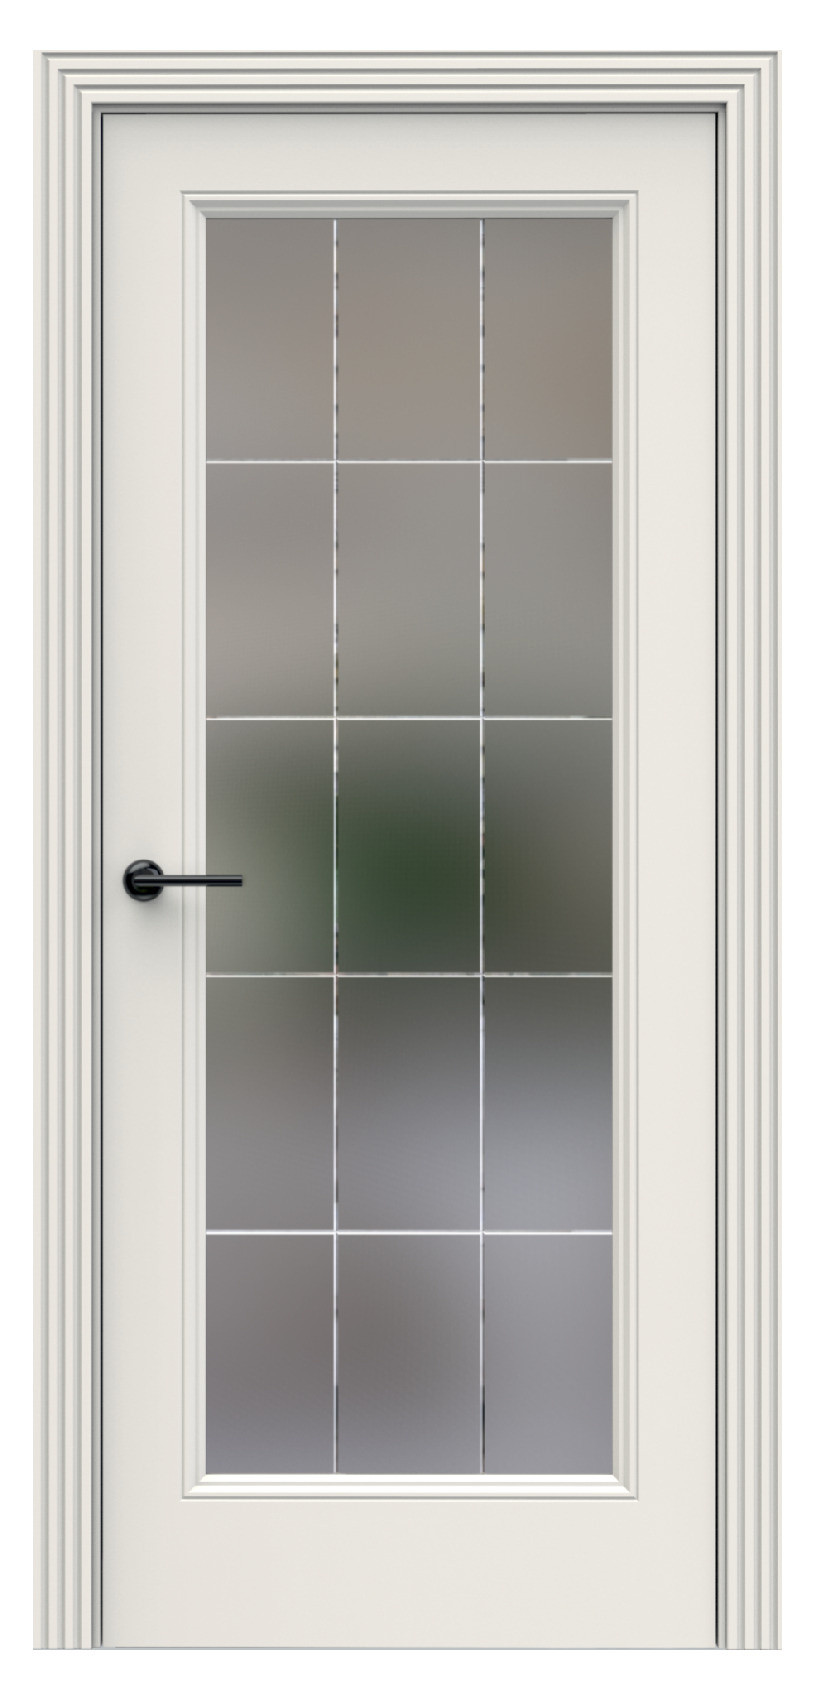 Questdoors Межкомнатная дверь QBR10, арт. 17923 - фото №1